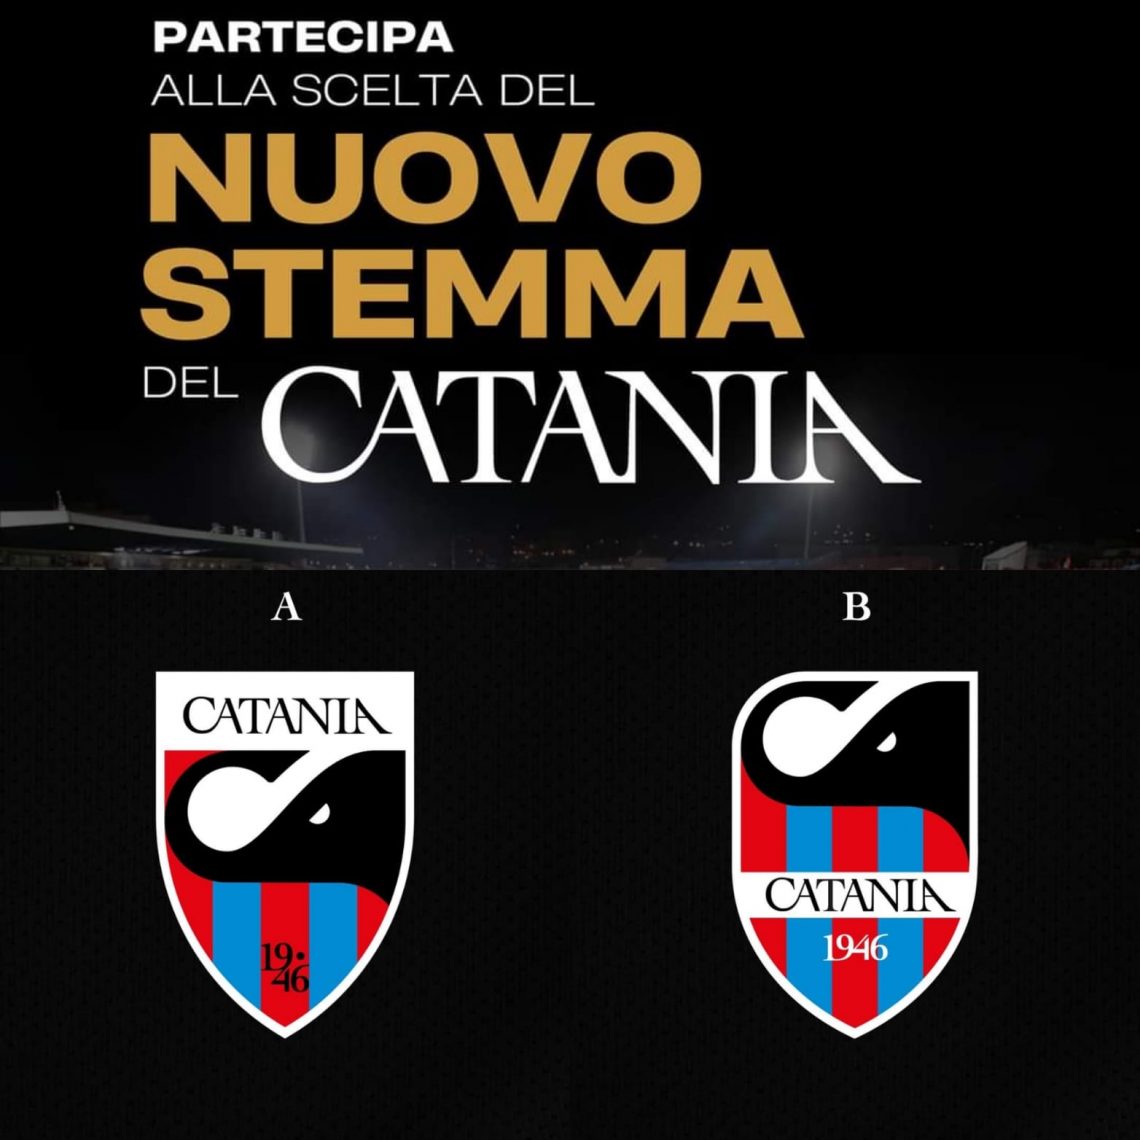 SSD Catania, il logo sarà scelto dai tifosi: iniziativa che sa di rilancio